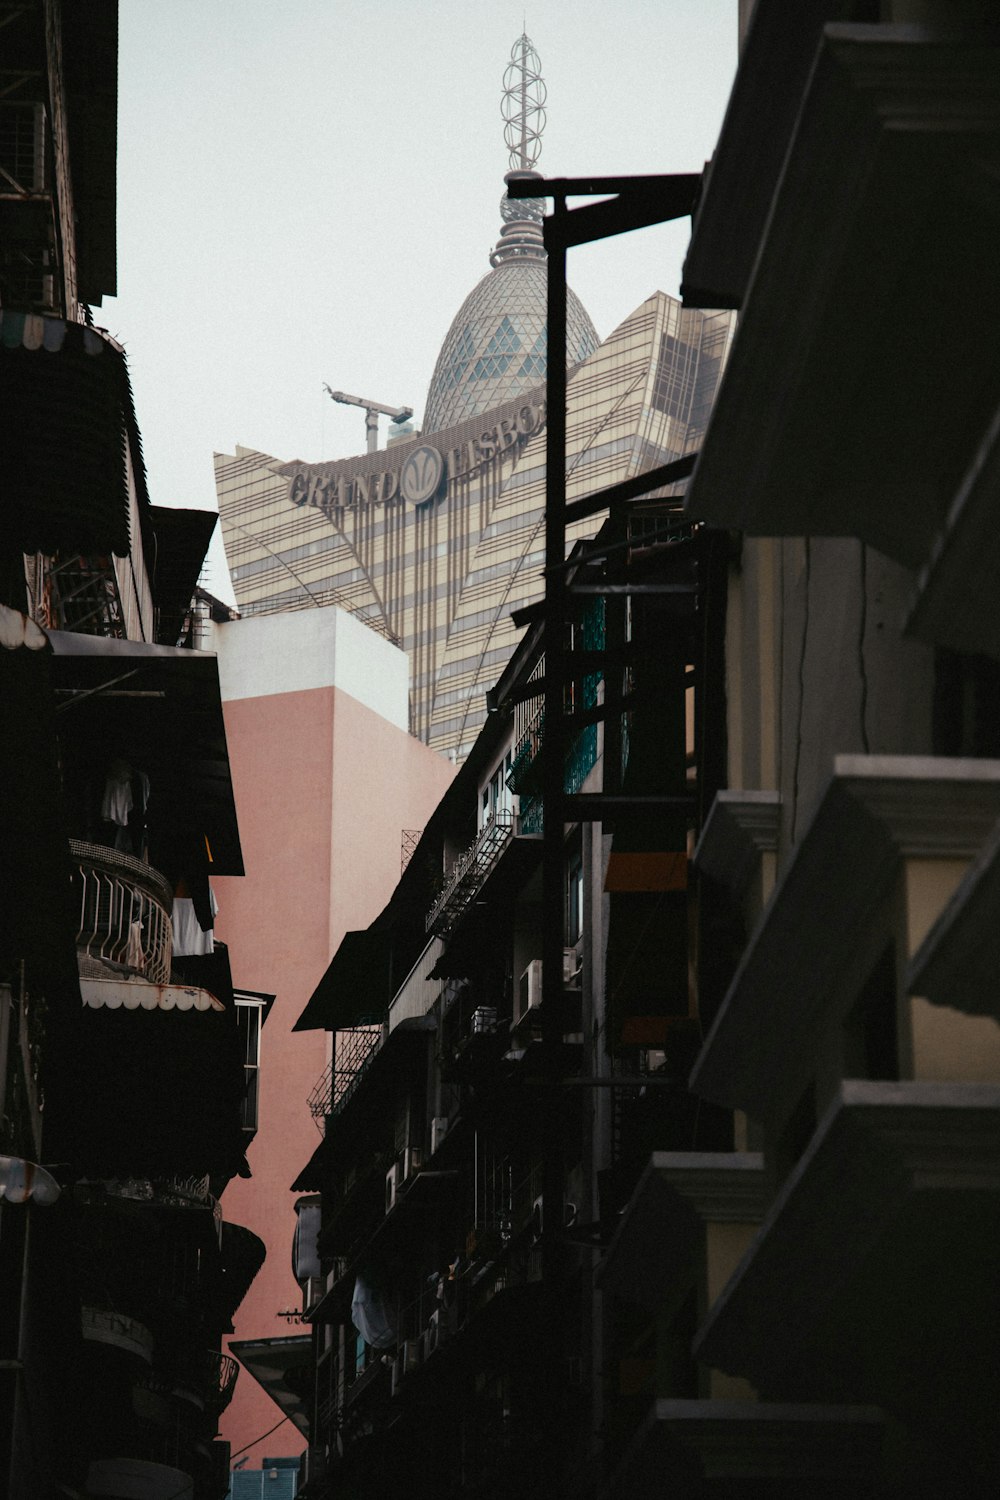 Una strada cittadina con edifici e una torre dell'orologio sullo sfondo